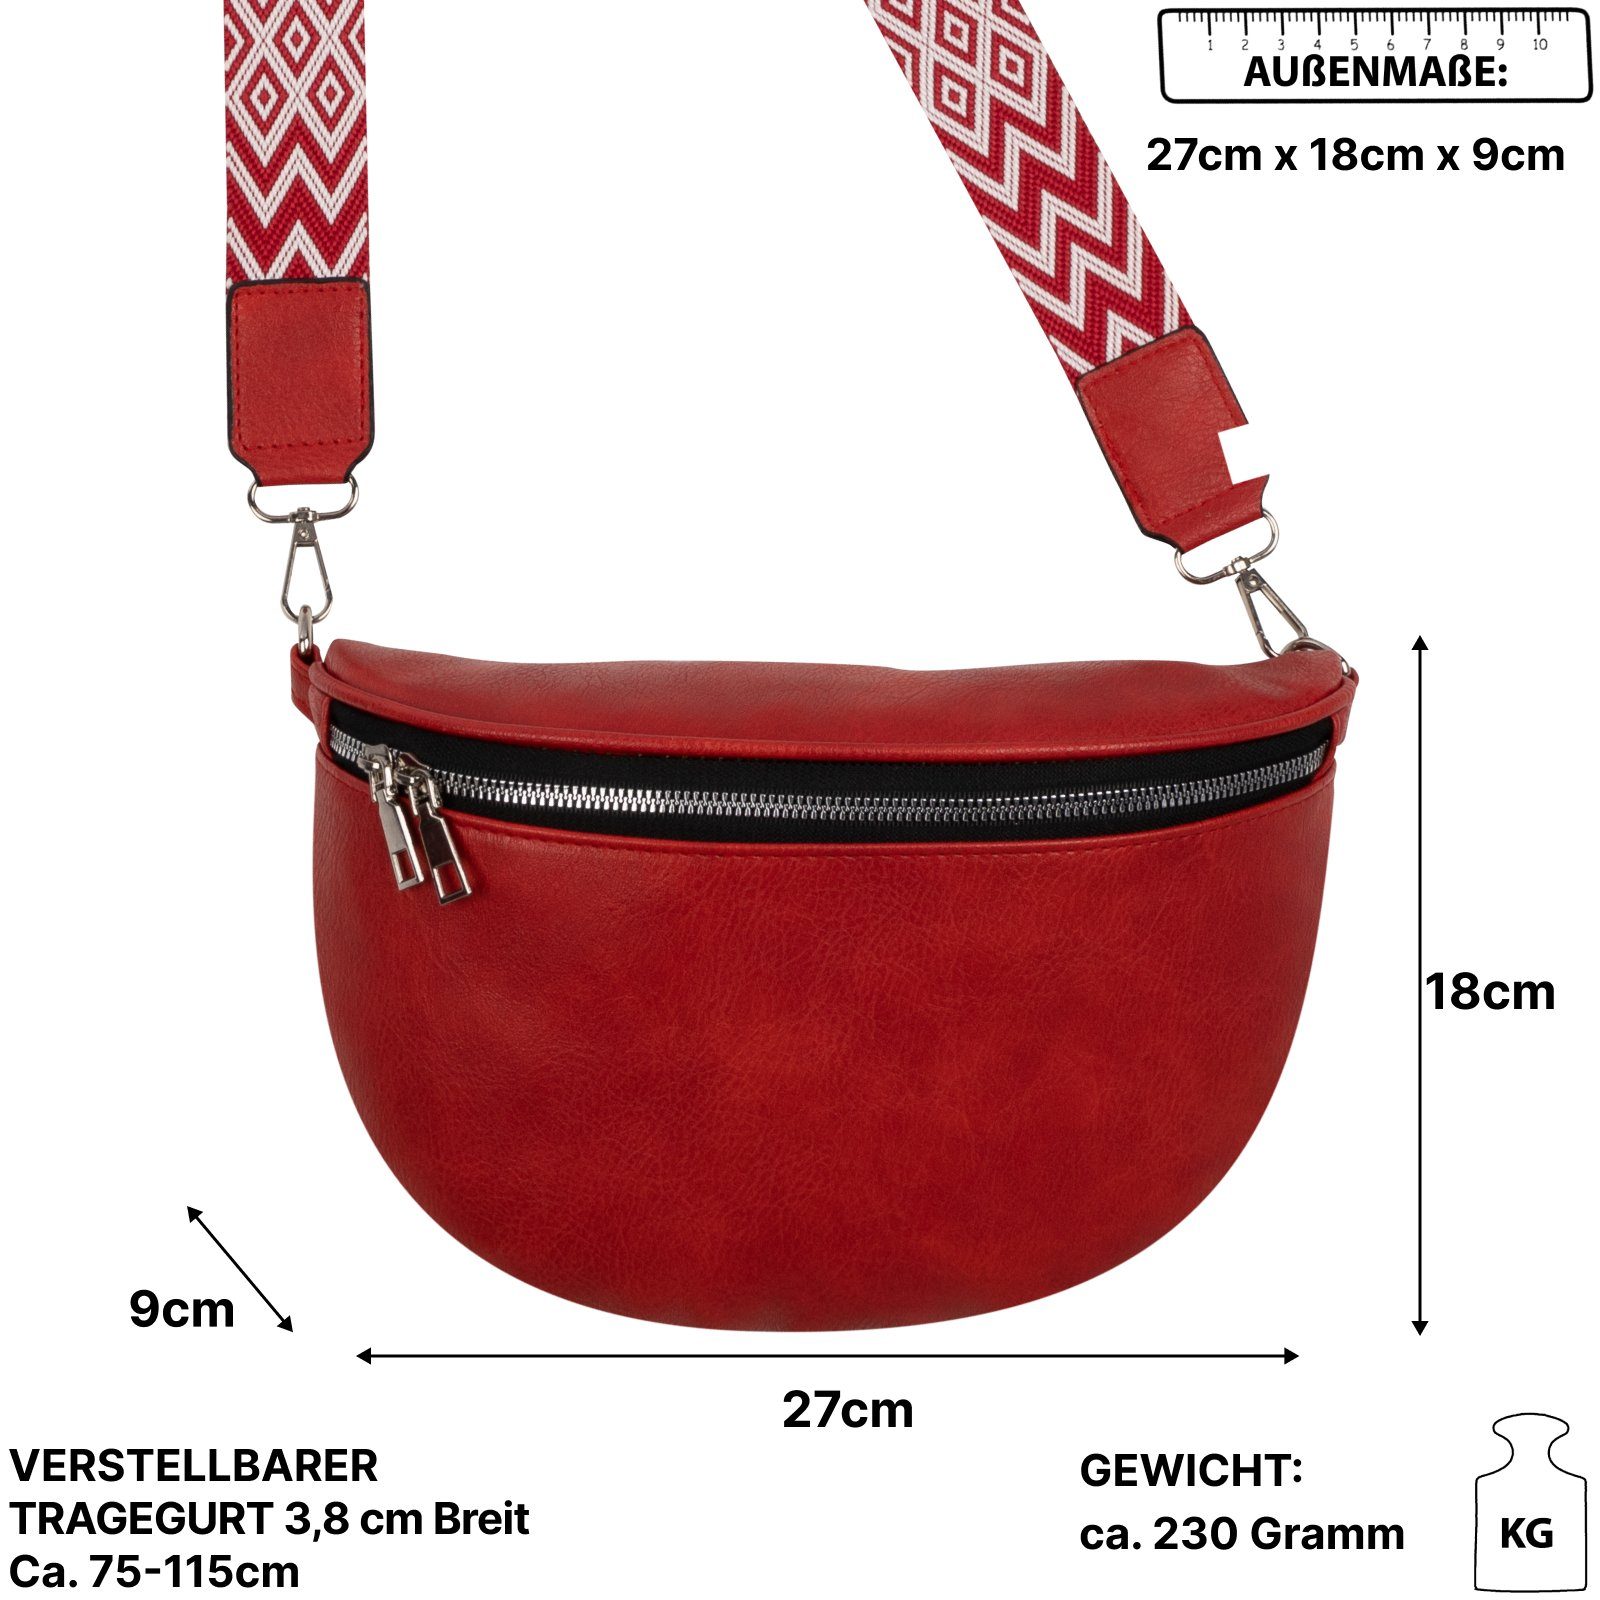 EAAKIE Gürteltasche Bauchtasche CrossOver, RED Umhängetasche Crossbody-Bag Italy-De, Umhängetasche Schultertasche, Hüfttasche tragbar Kunstleder als